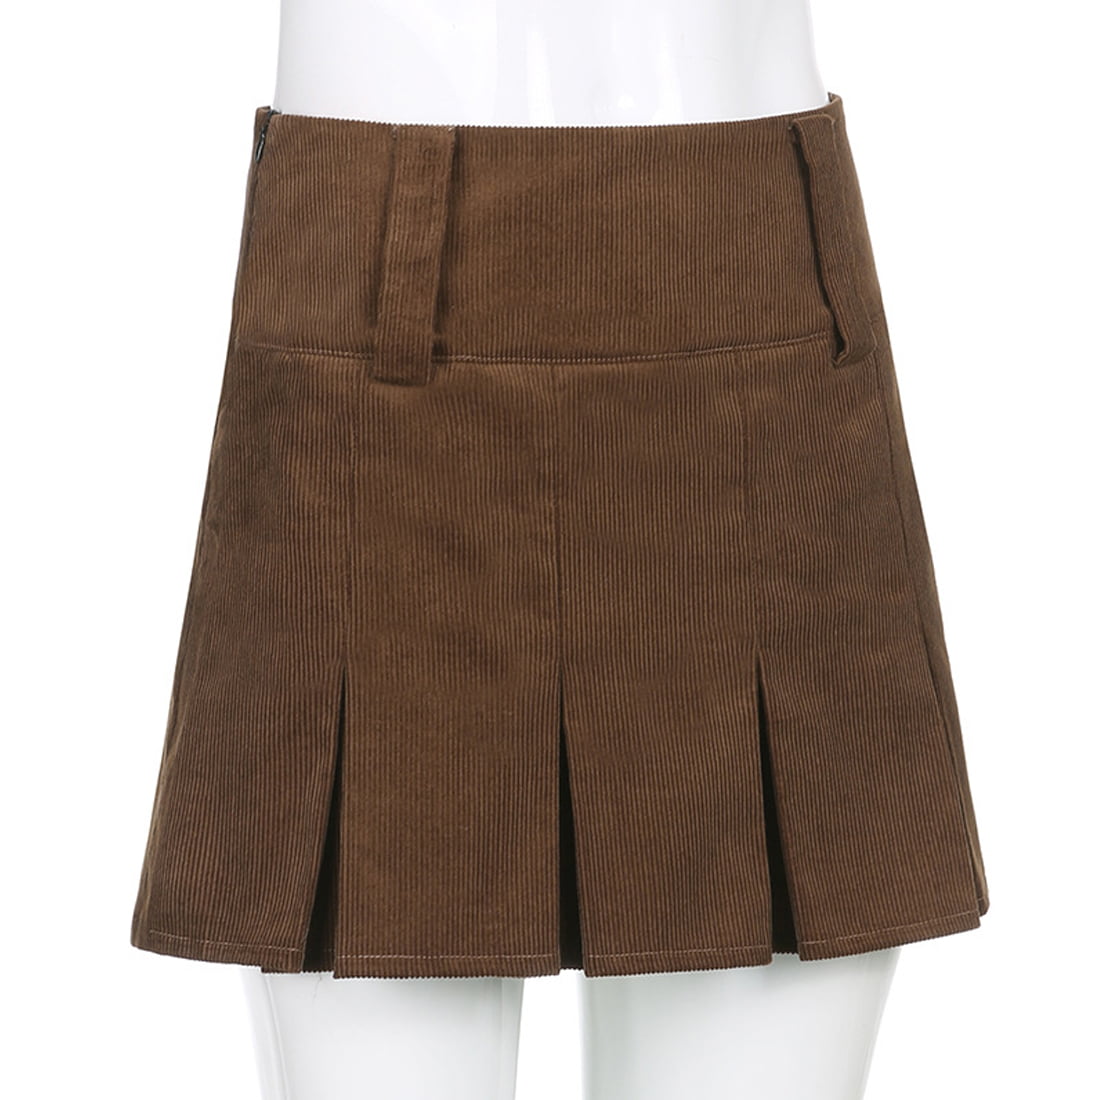 Wool skirt/Midi skirt/winter skirt/a-line skirt/pleated skirt/dark blue skirt/elastic waist skirt/skirt with pockets A008 Clothing Womens Clothing Skirts 